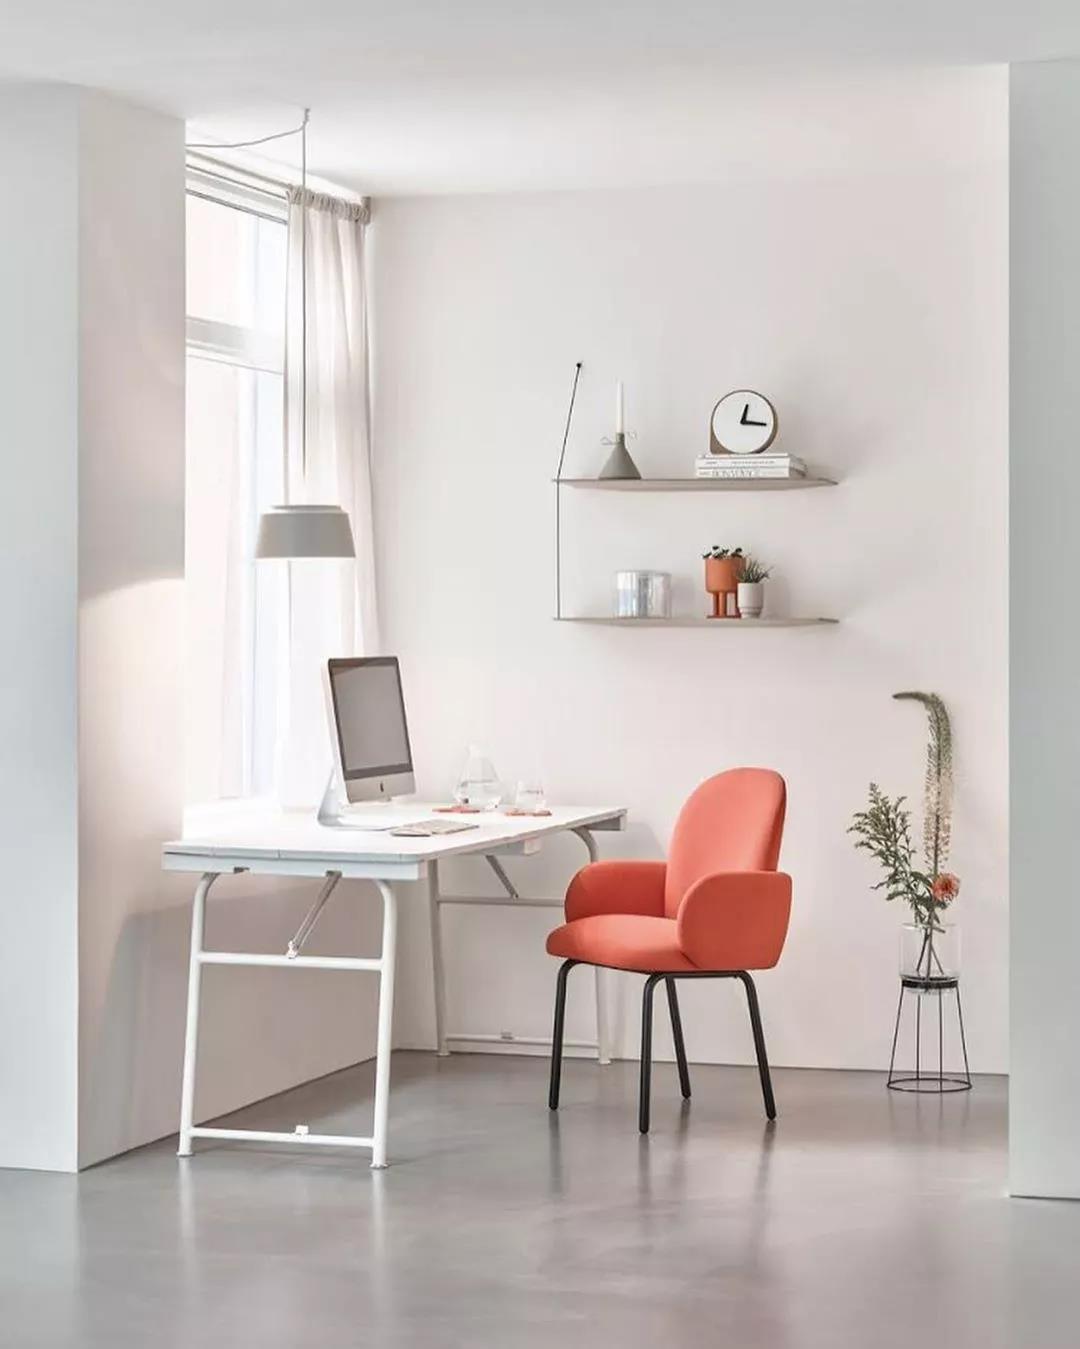 橘色椅子與白色書桌